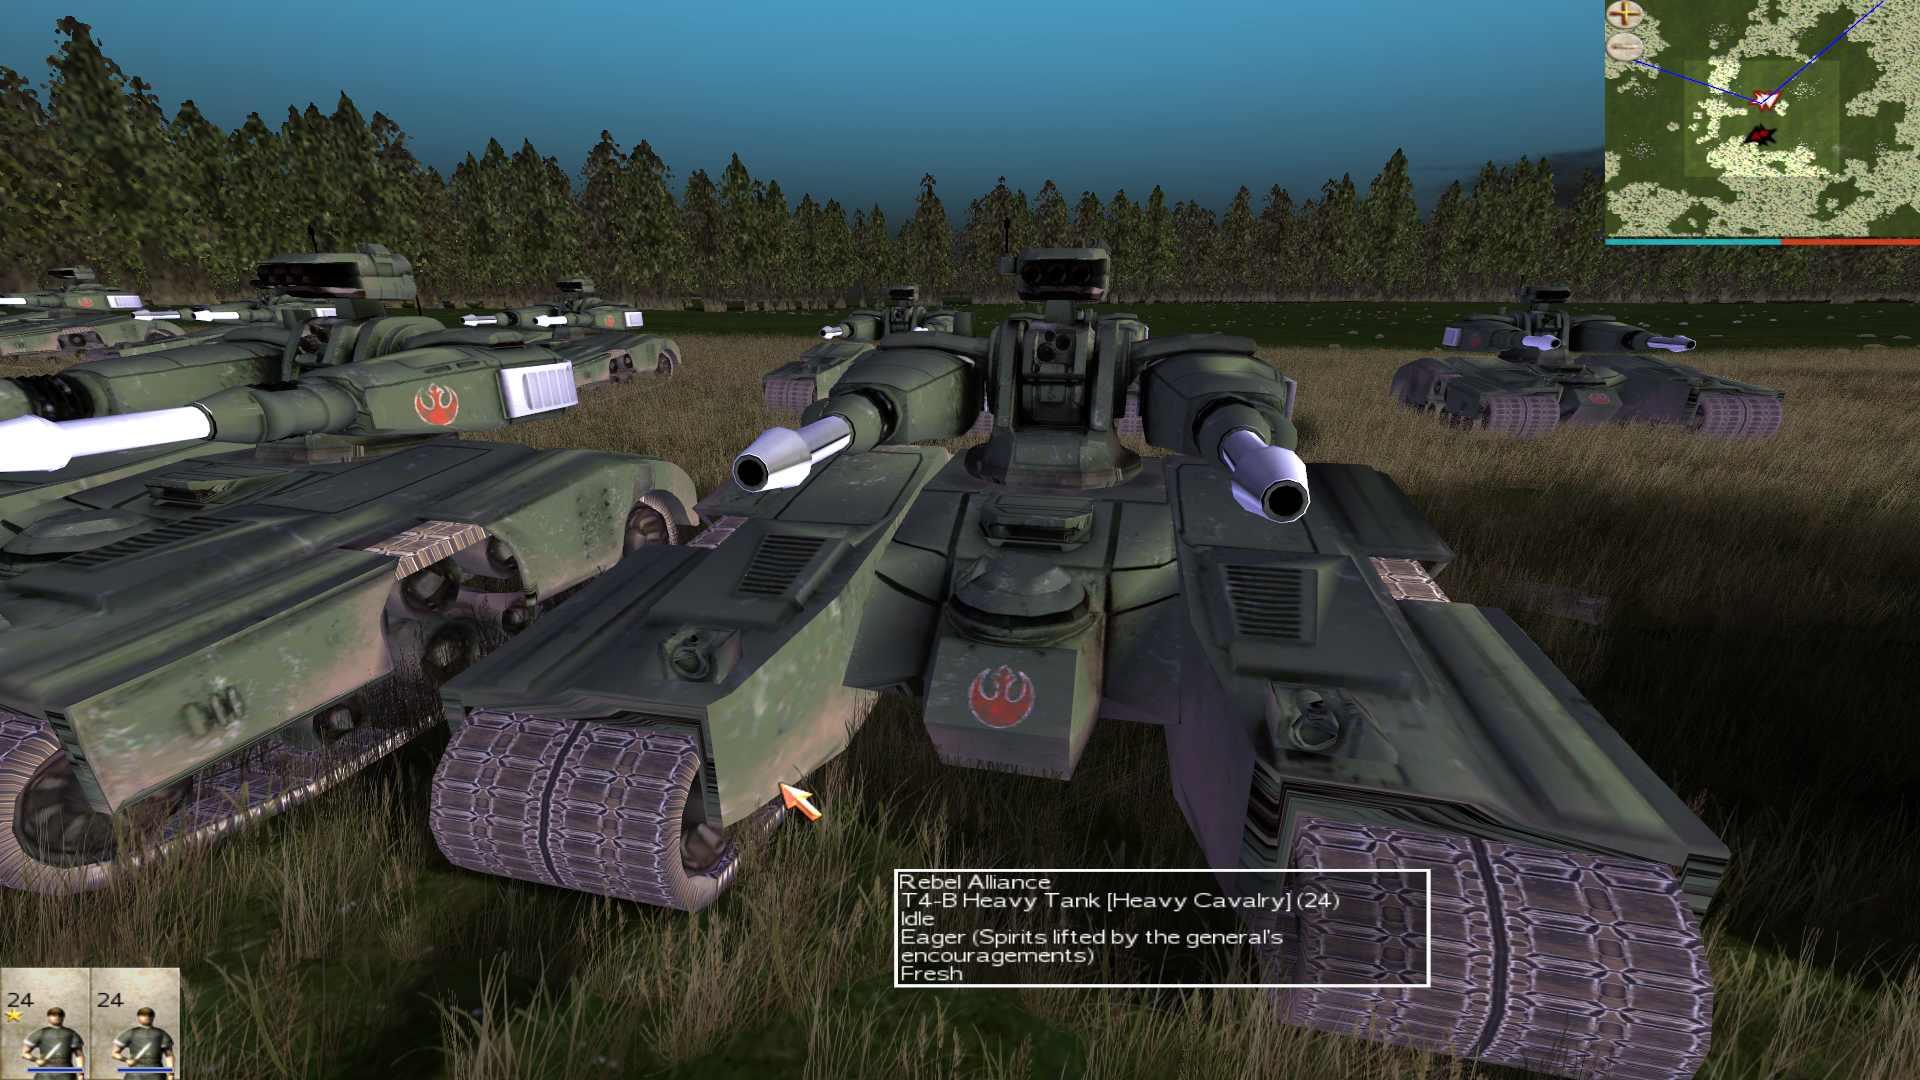 New T4-B Mechs/Tanks of the Rebel Alliance!